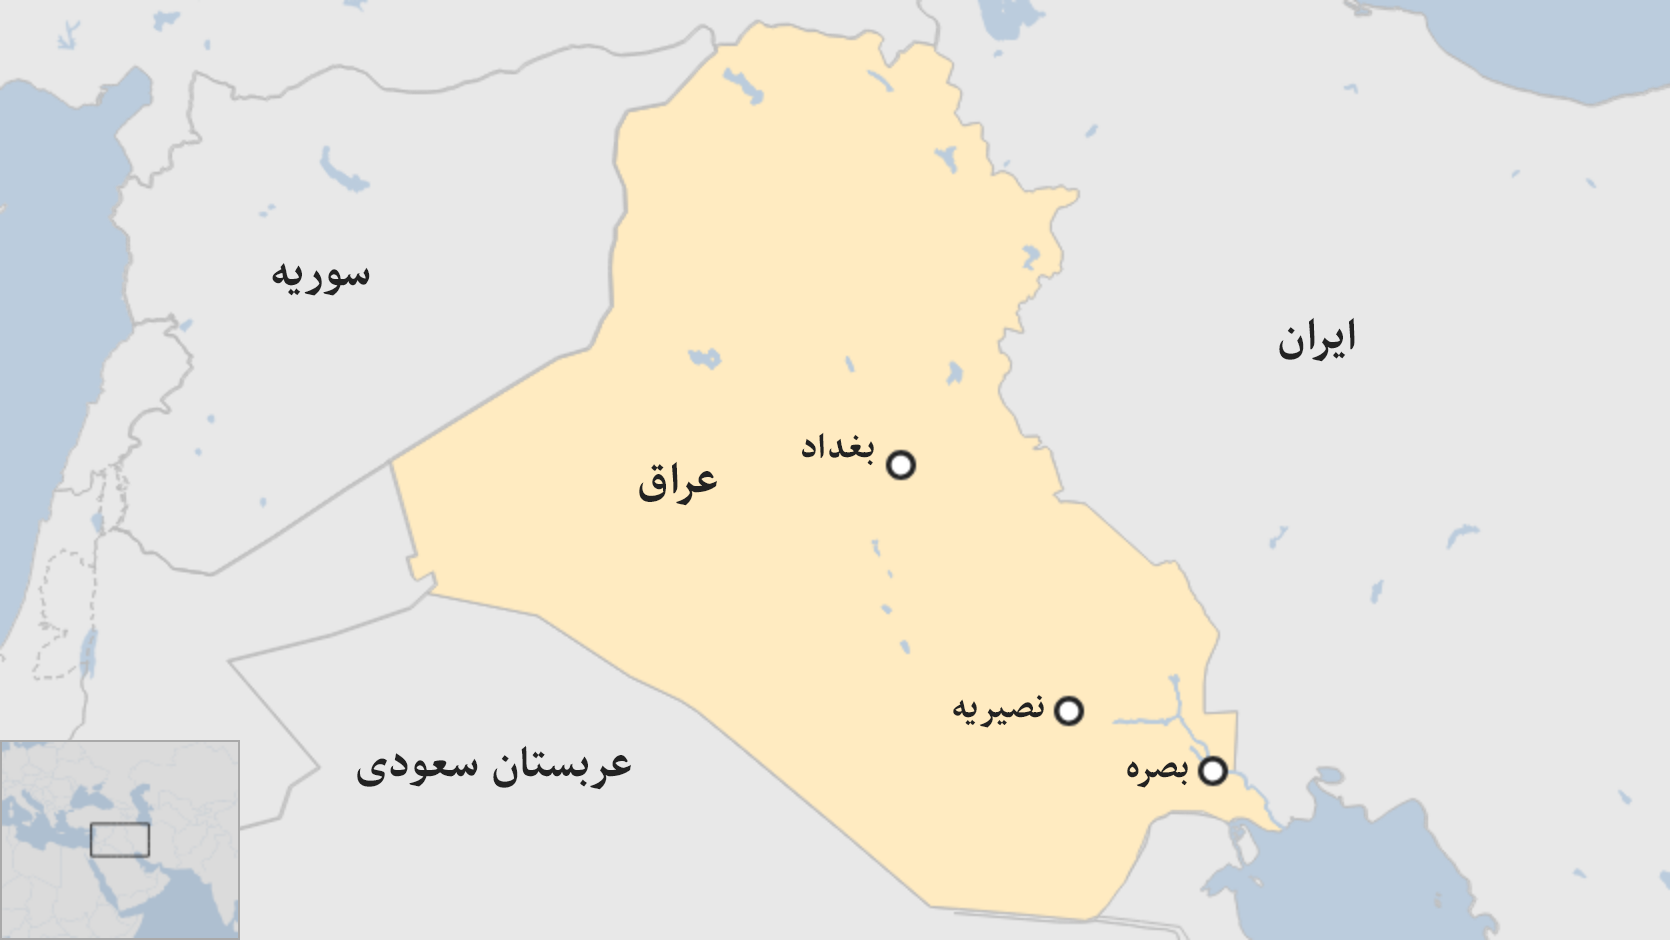 تصویر نقشه کشور عراق